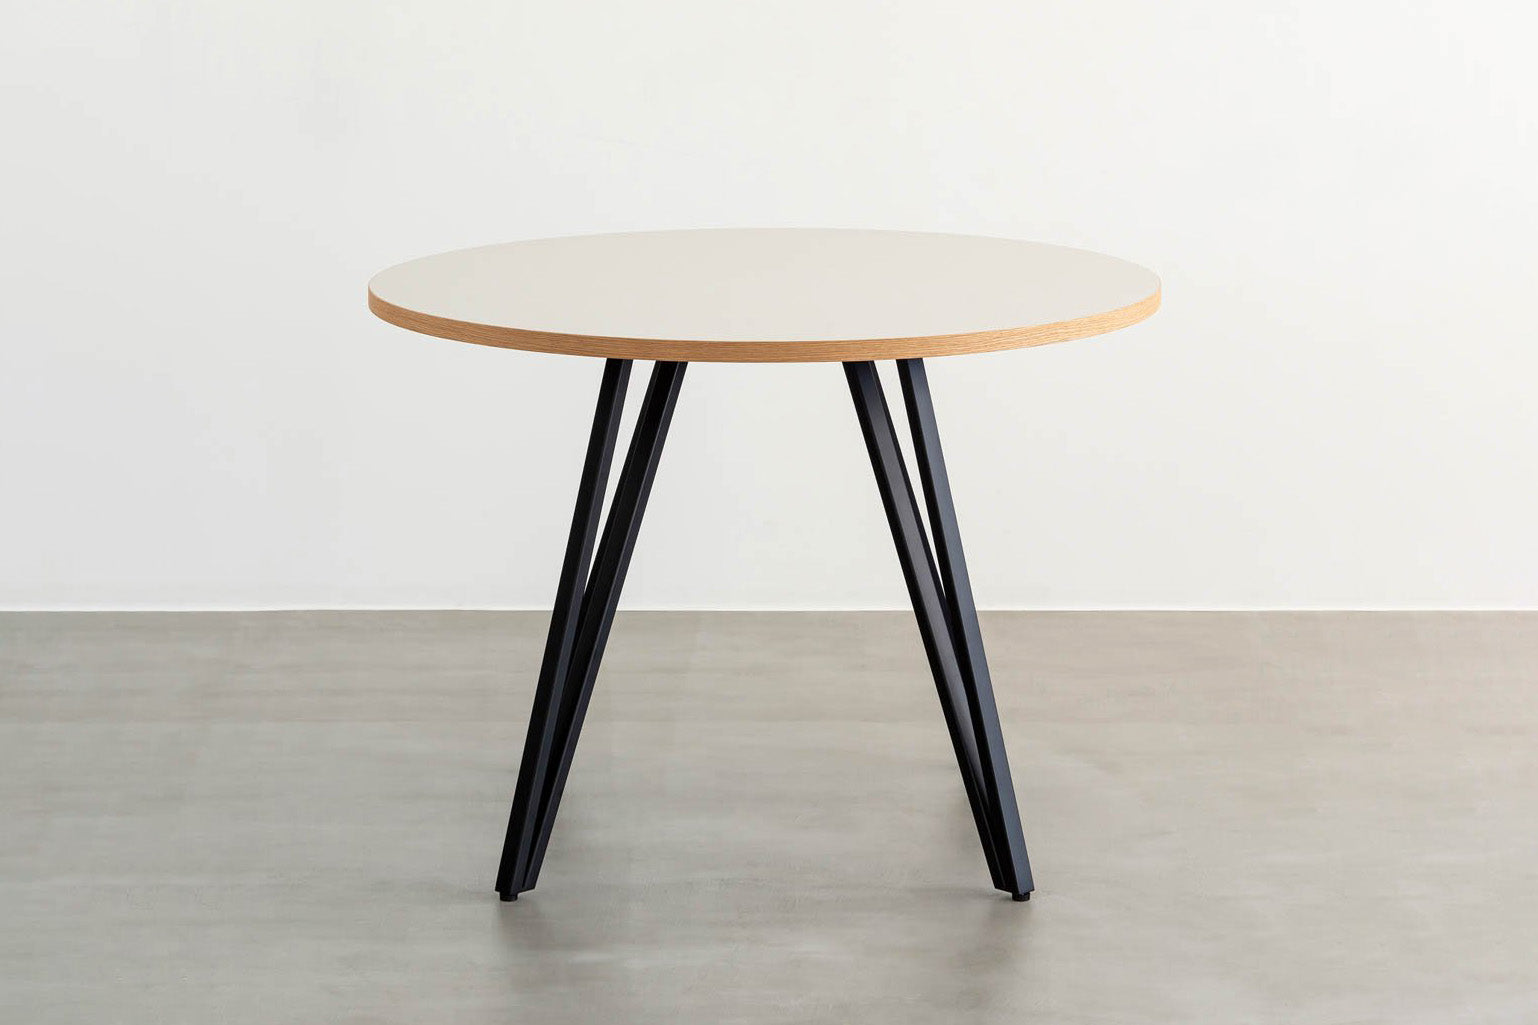 Kanademonoリノリウム・Neroのラウンド天板とデザイン性の高いXラインの脚を組み合わせたカフェテーブル